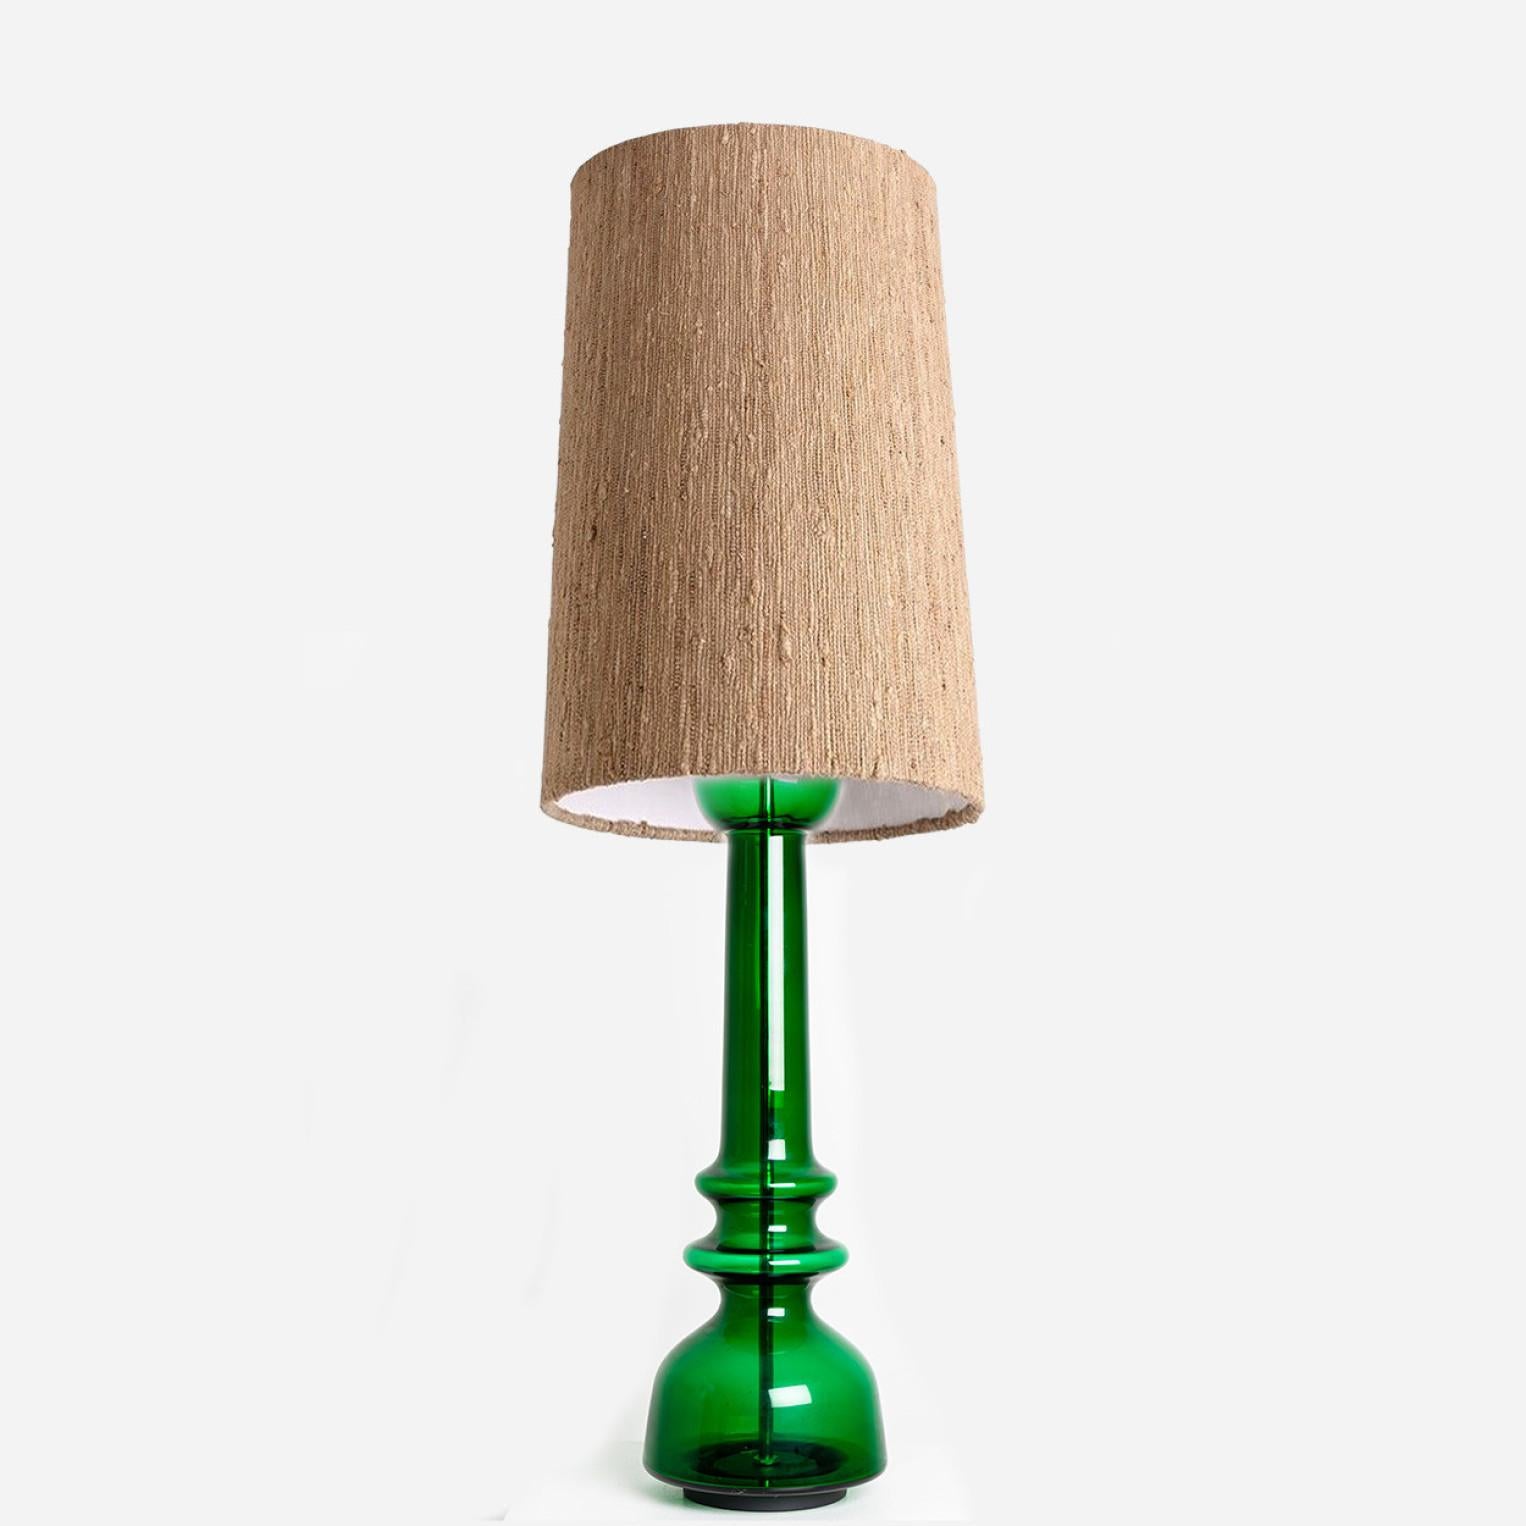 Un design unique, minimaliste et intemporel. Conçu et fabriqué par Doria Leuchten Allemagne, vers 1960.
La lampe de table en verre est dotée d'une base transparente vert vif et d'une tige chromée en son centre. Fini avec un abat-jour sur mesure.